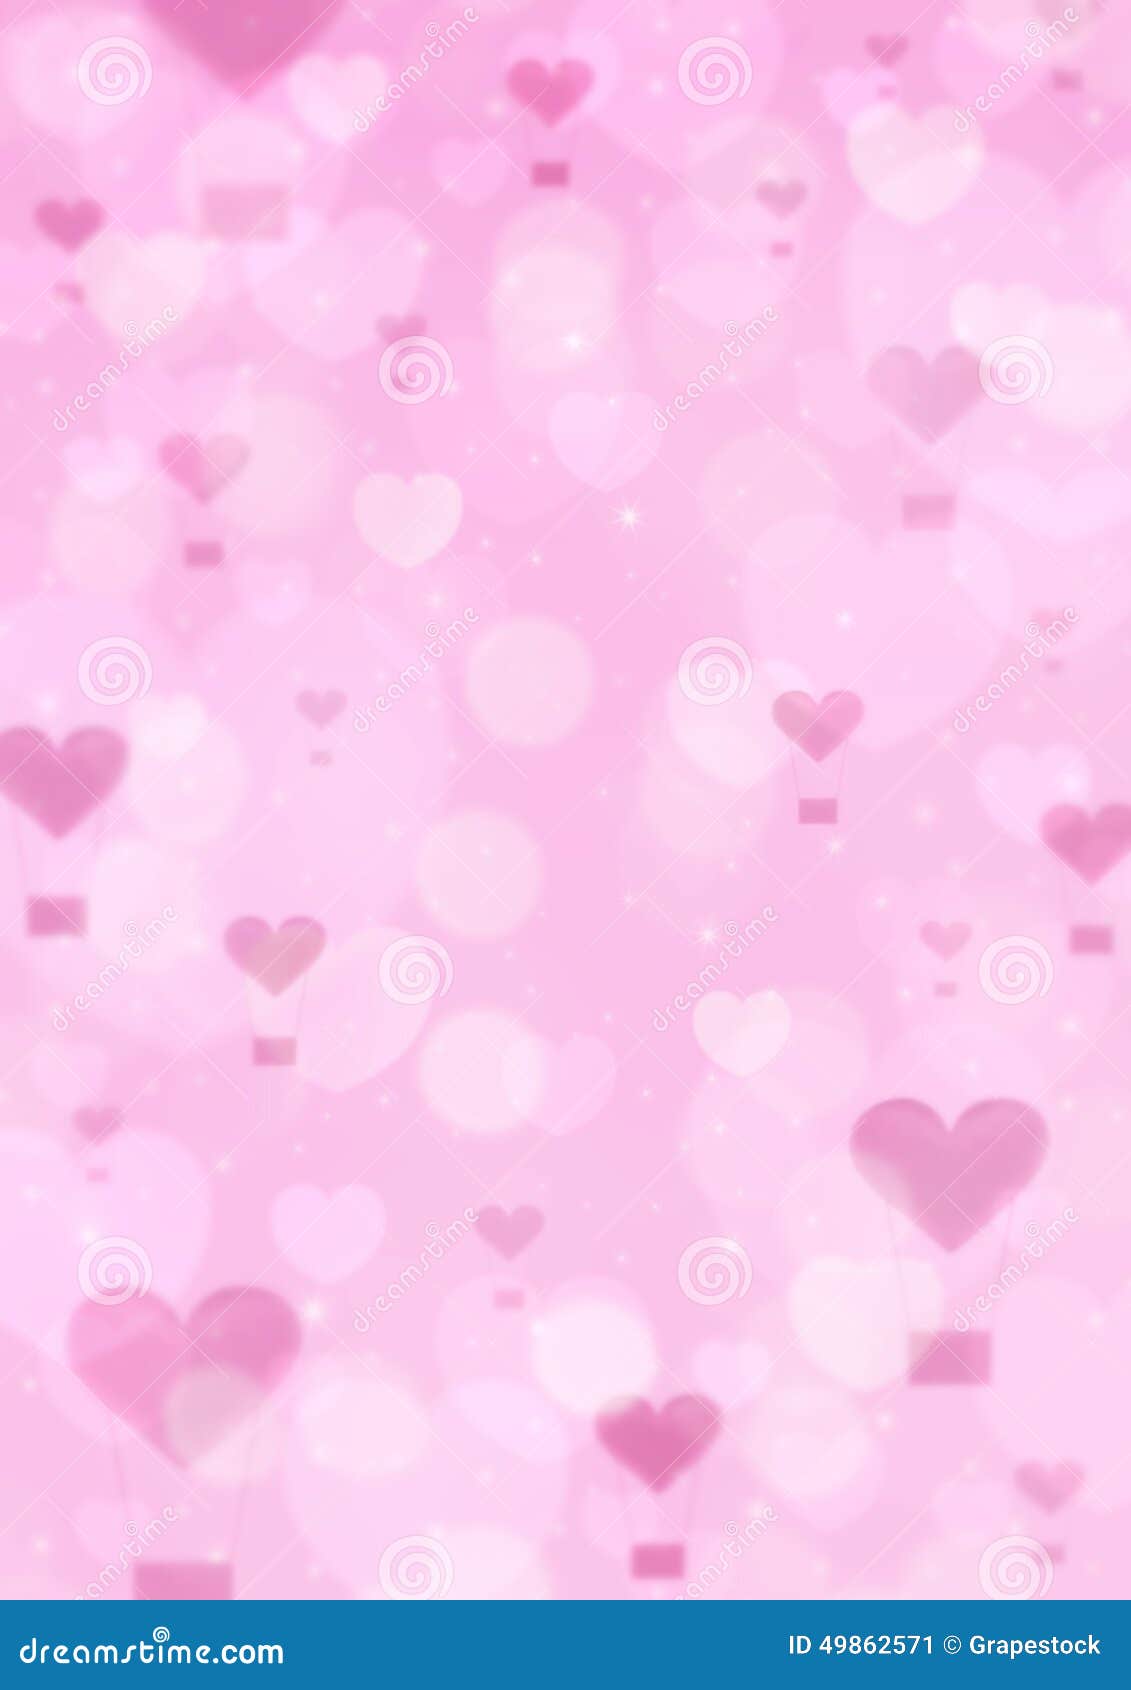 Hình nền hồng tình yêu là nét hoàn hảo để thể hiện sự cảm thông và yêu thương của bạn. Làm cho màn hình điện thoại của bạn trở nên tươi sáng hơn với hình nền hồng tươi tình yêu để giữ tinh thần lạc quan và tình cảm đầy màu sắc.